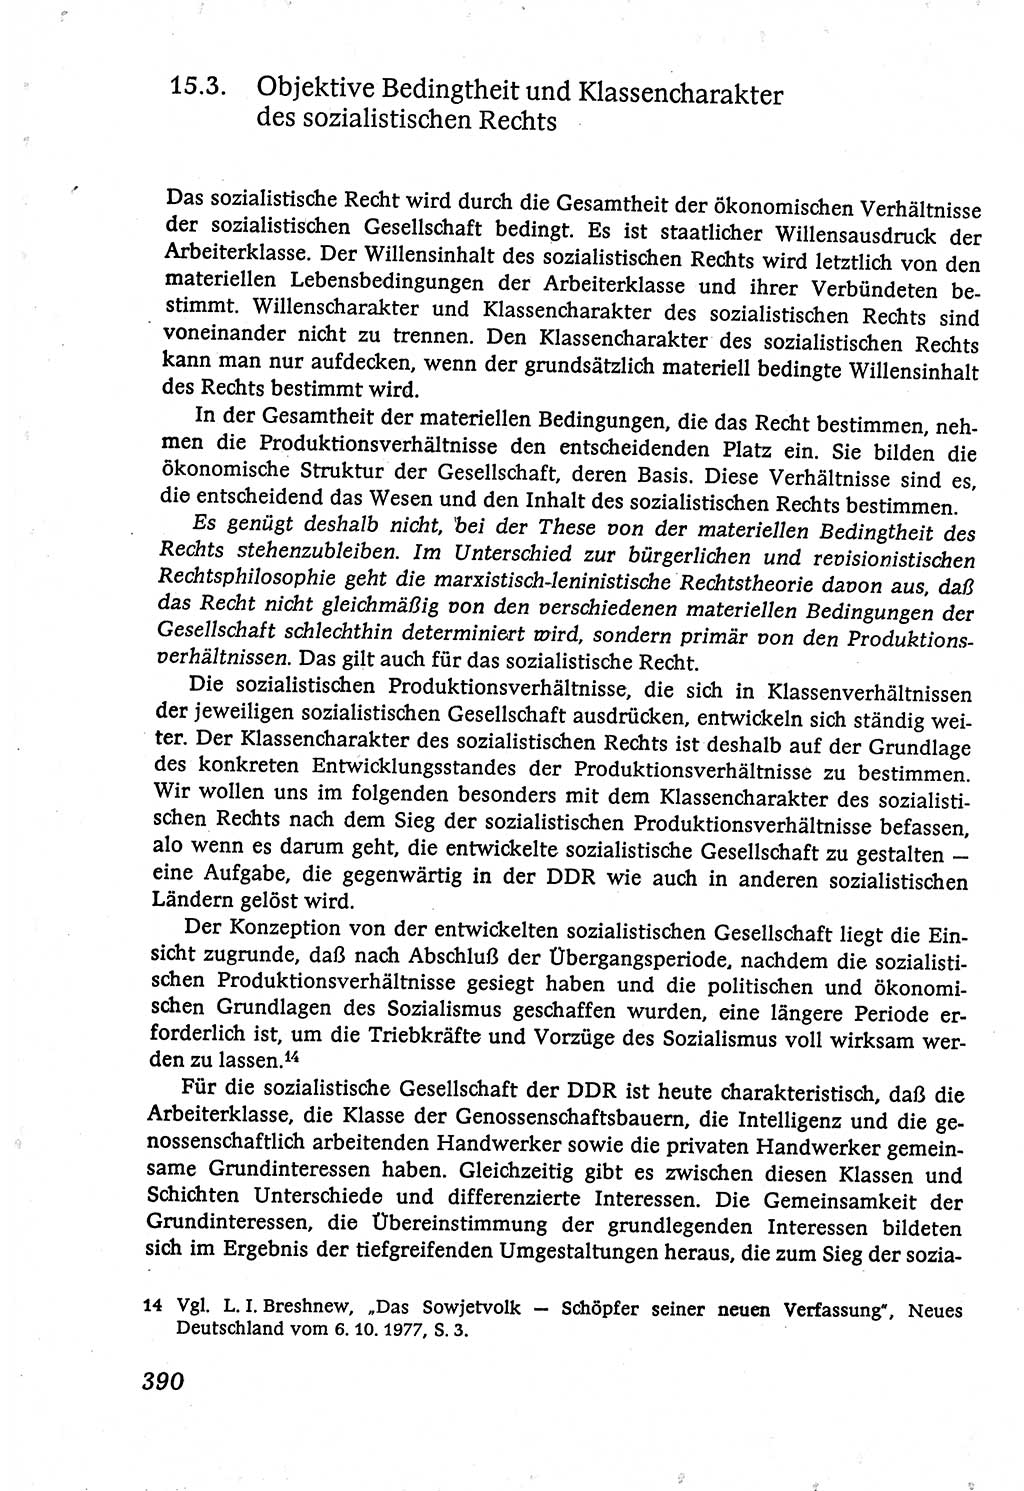 Marxistisch-leninistische (ML) Staats- und Rechtstheorie [Deutsche Demokratische Republik (DDR)], Lehrbuch 1980, Seite 390 (ML St.-R.-Th. DDR Lb. 1980, S. 390)